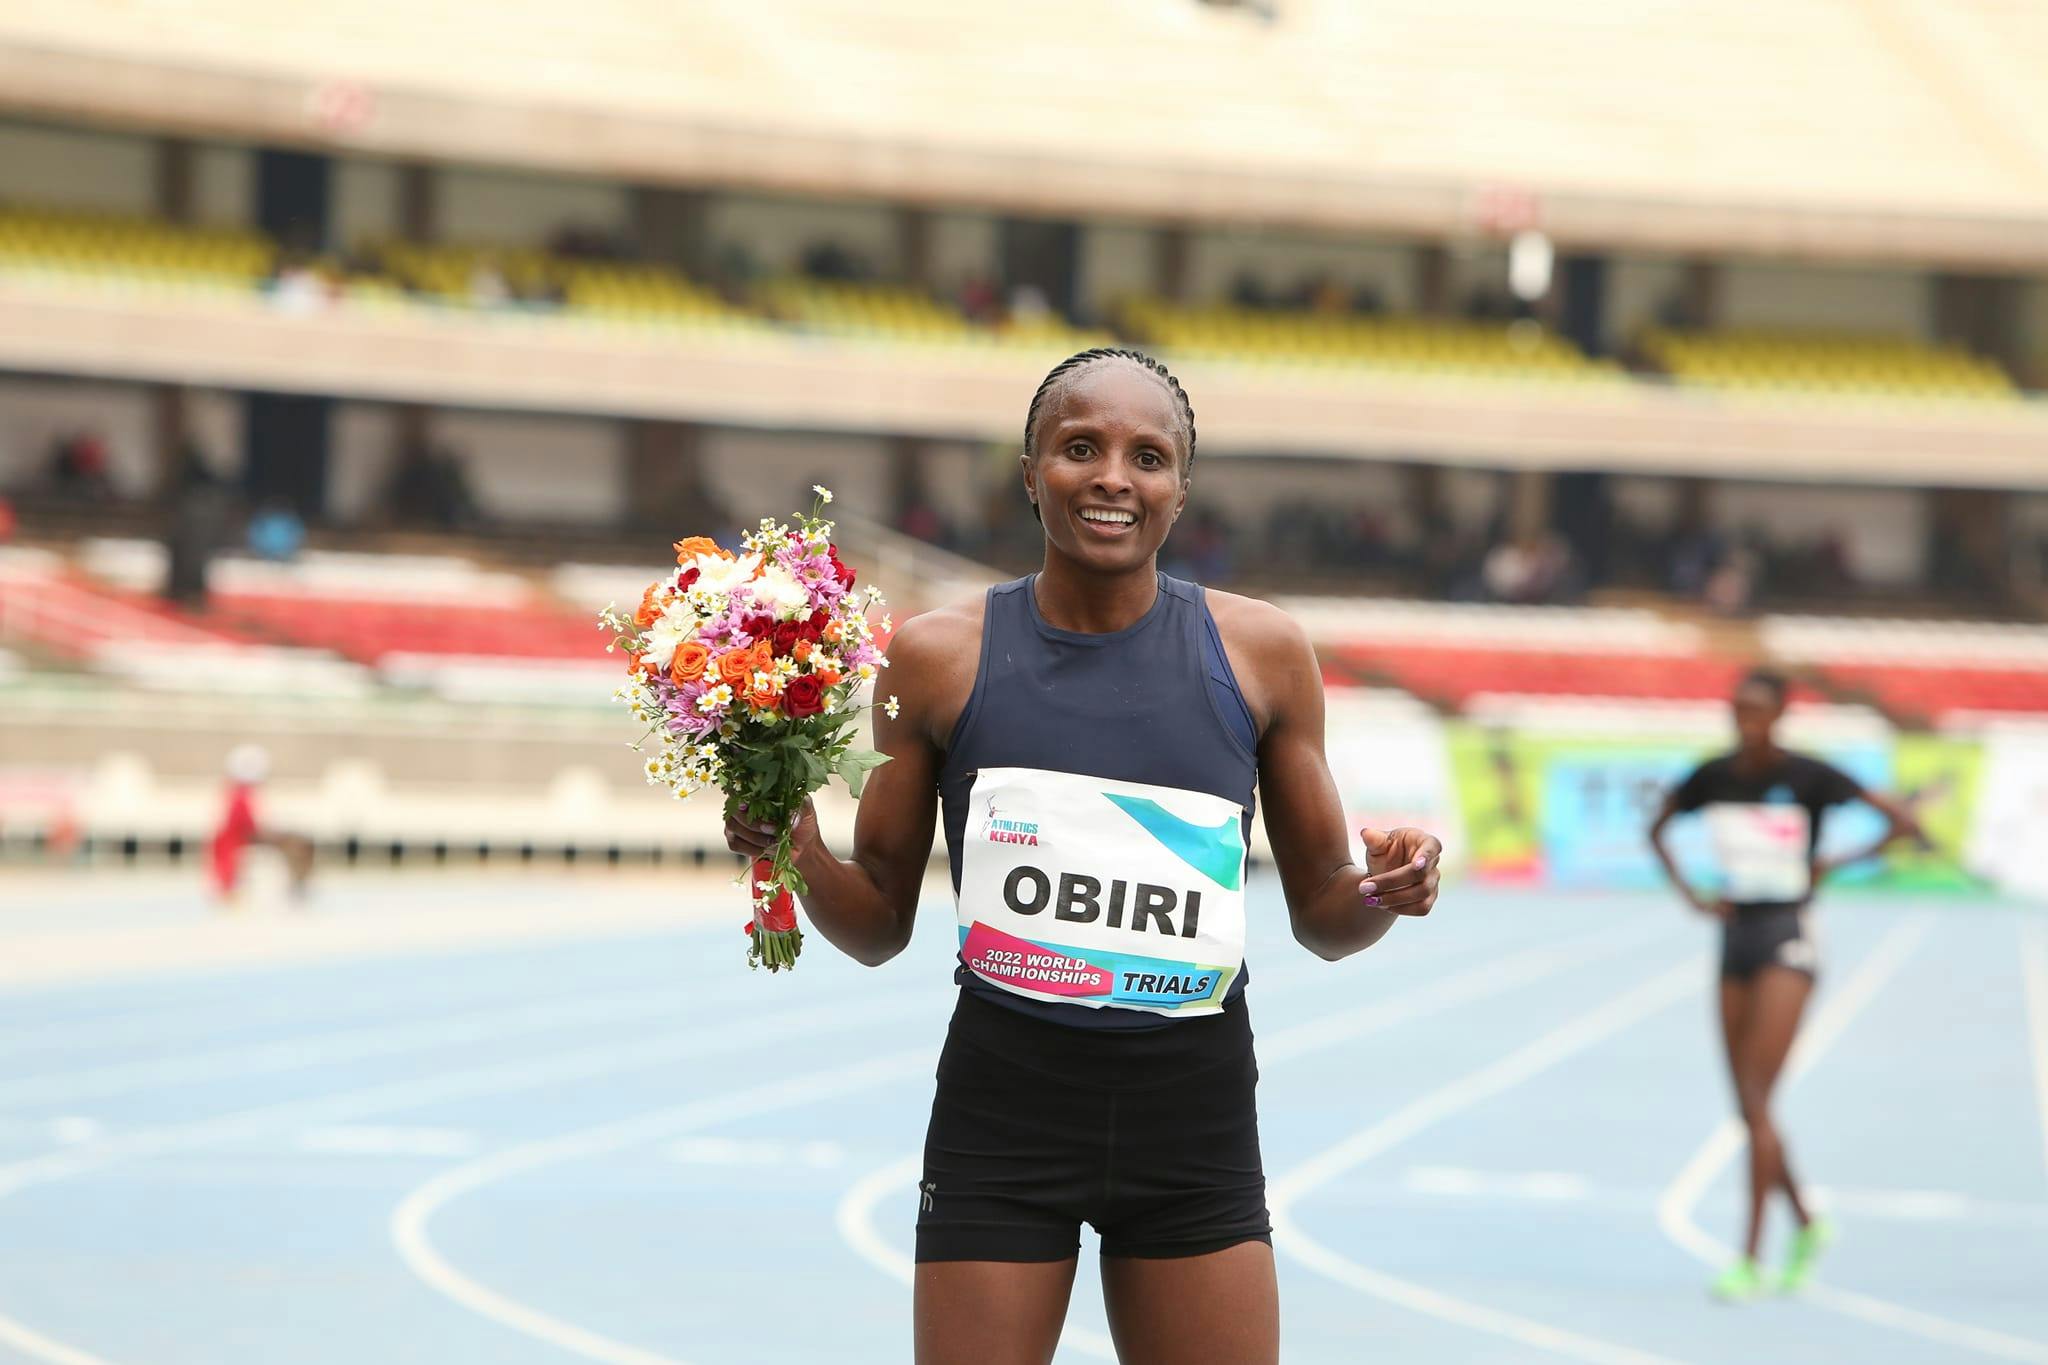 Trials Κένυας - Πρώτη στα 10.000 μέτρα η Obiri: «Να υπερασπιστώ τον παγκόσμιο τίτλο μου στα 5.000 μέτρα»